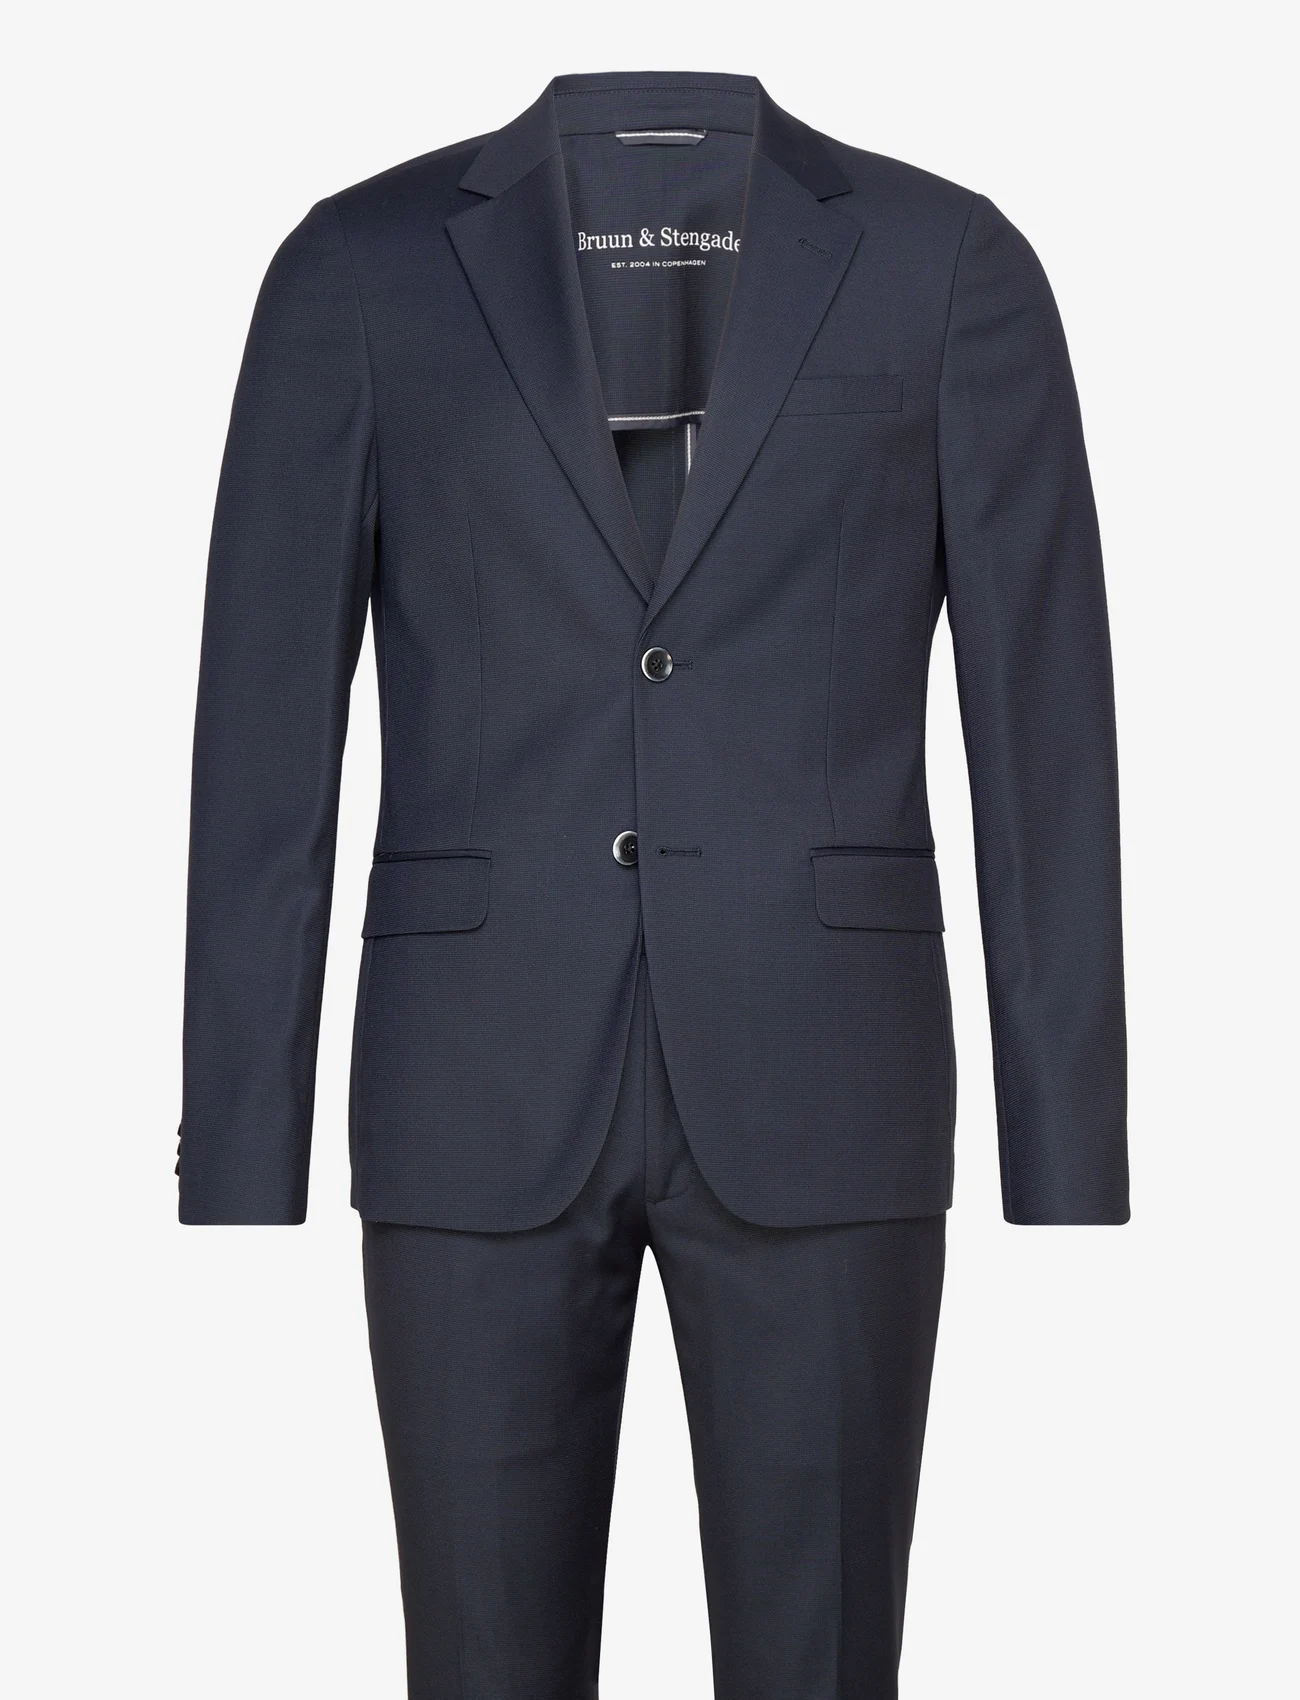 Bruun & Stengade - BS Napa Slim Fit Suit Set - navy - 0